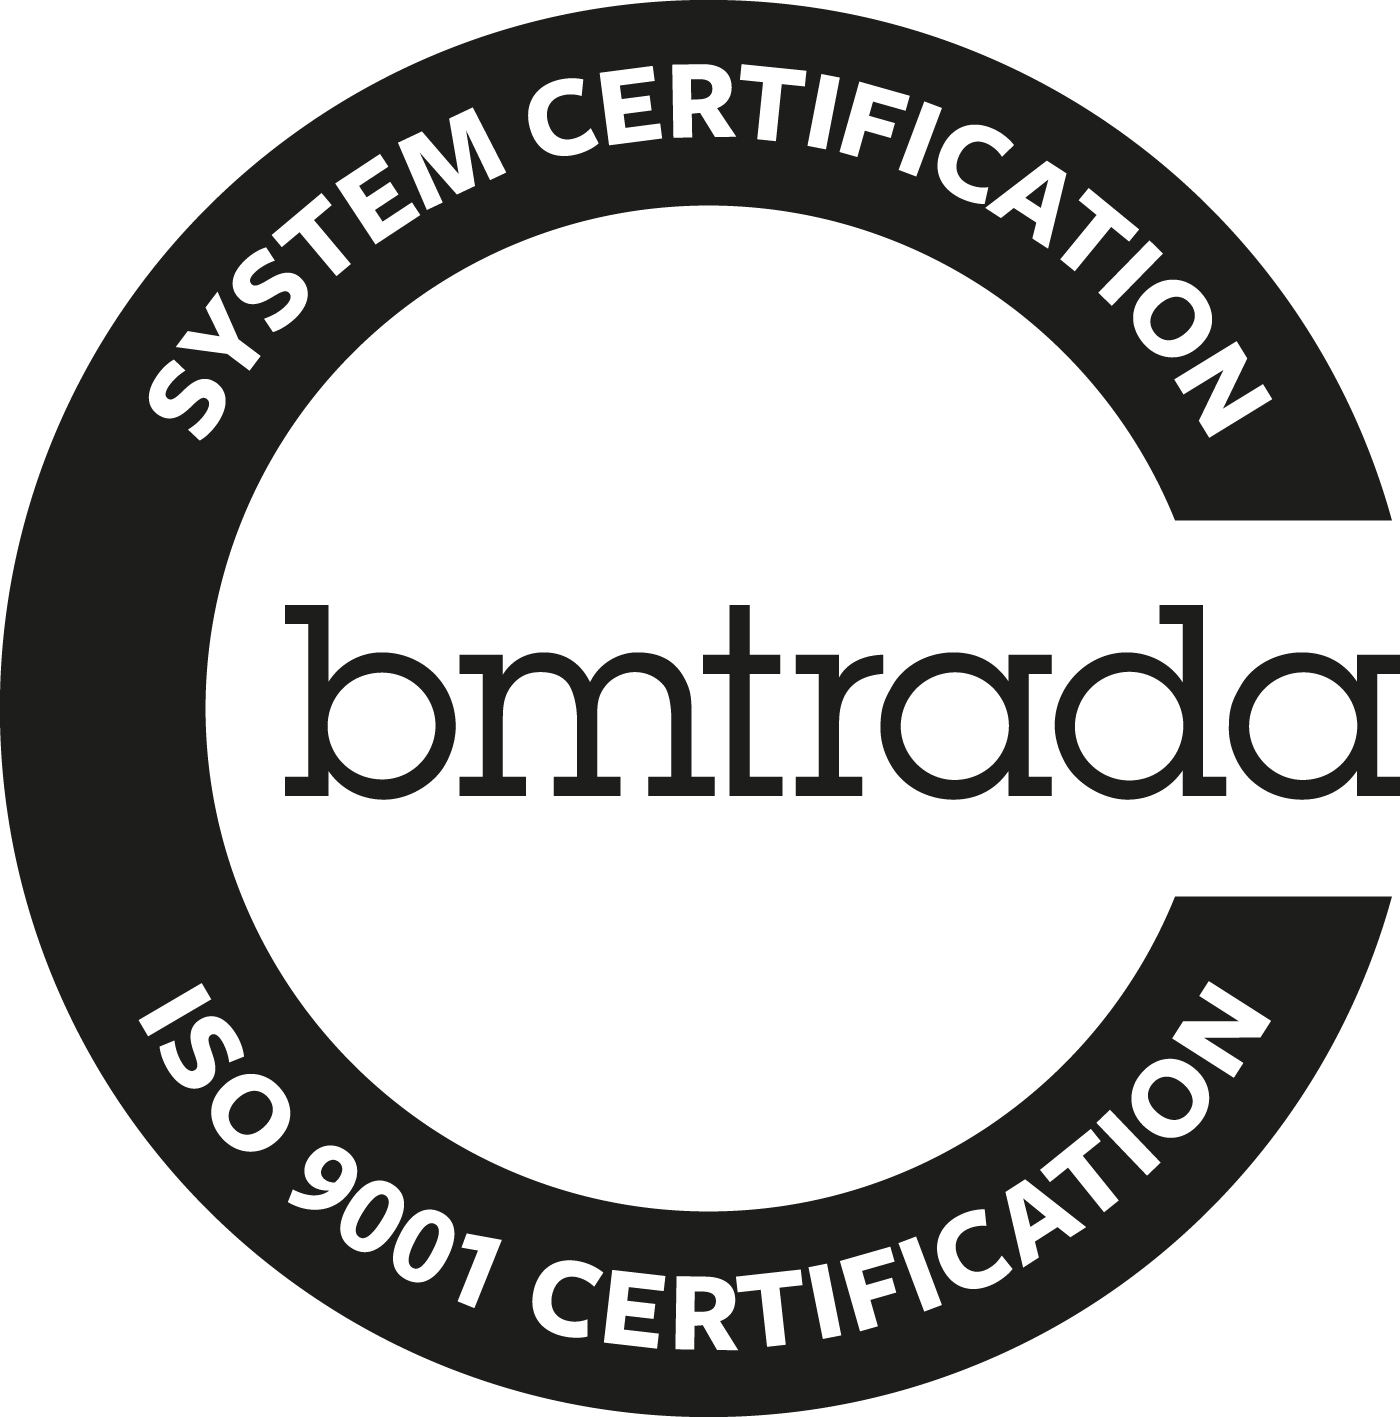 19085 BM TRADA C Mark SystemCert ISO 9001 MONO